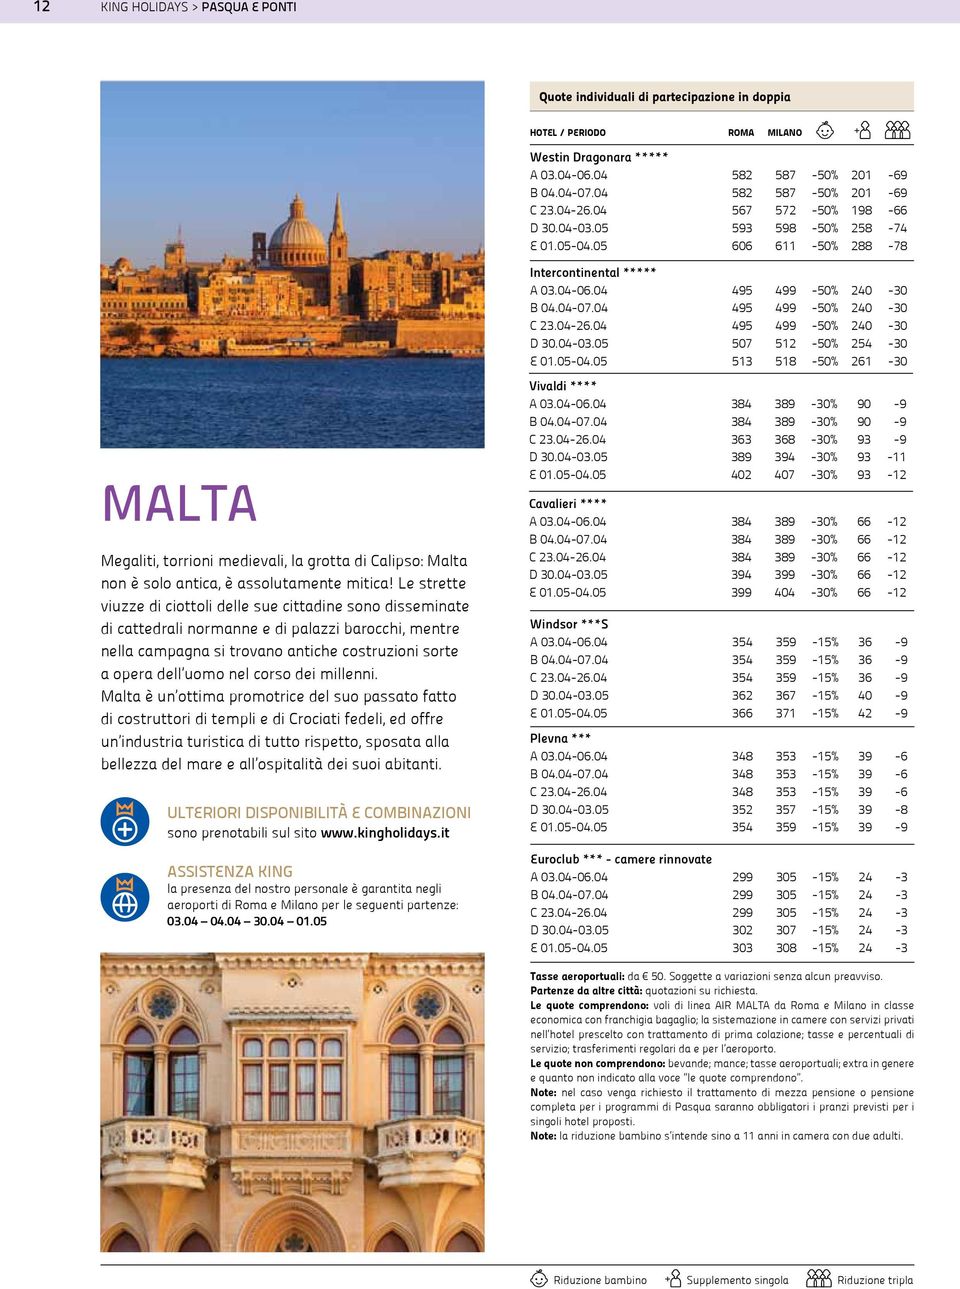 05 507 512-50% 254-30 E 01.05-04.05 513 518-50% 261-30 MALTA Megaliti, torrioni medievali, la grotta di Calipso: Malta non è solo antica, è assolutamente mitica!